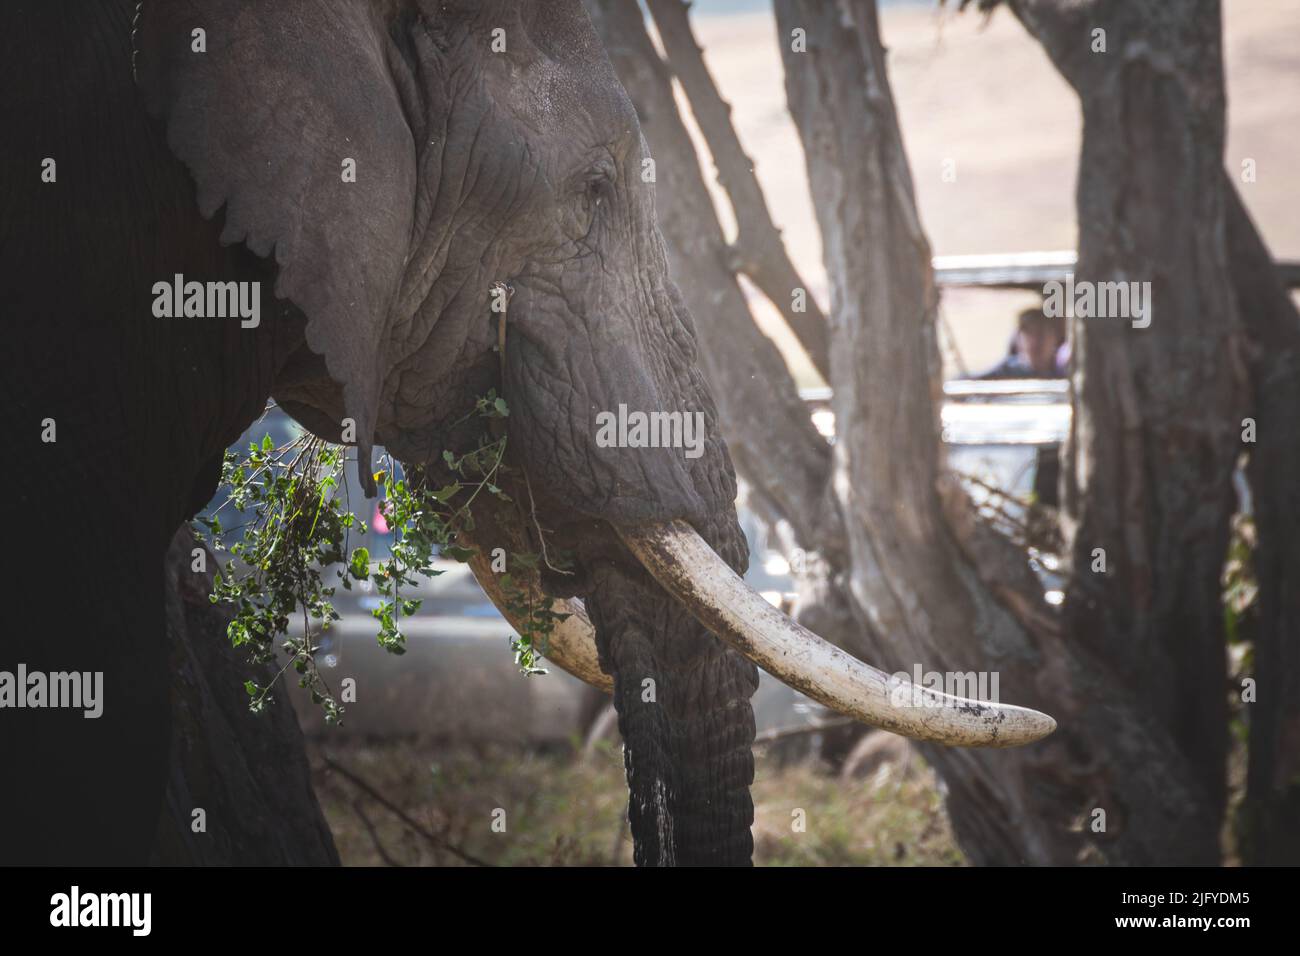 Nahaufnahme eines isolierten großen erwachsenen männlichen Elefanten (Elephantidae) im Grünlandschutzgebiet des Ngorongoro-Kraters. Safari-Konzept für Wildtiere. Tansania. Af Stockfoto